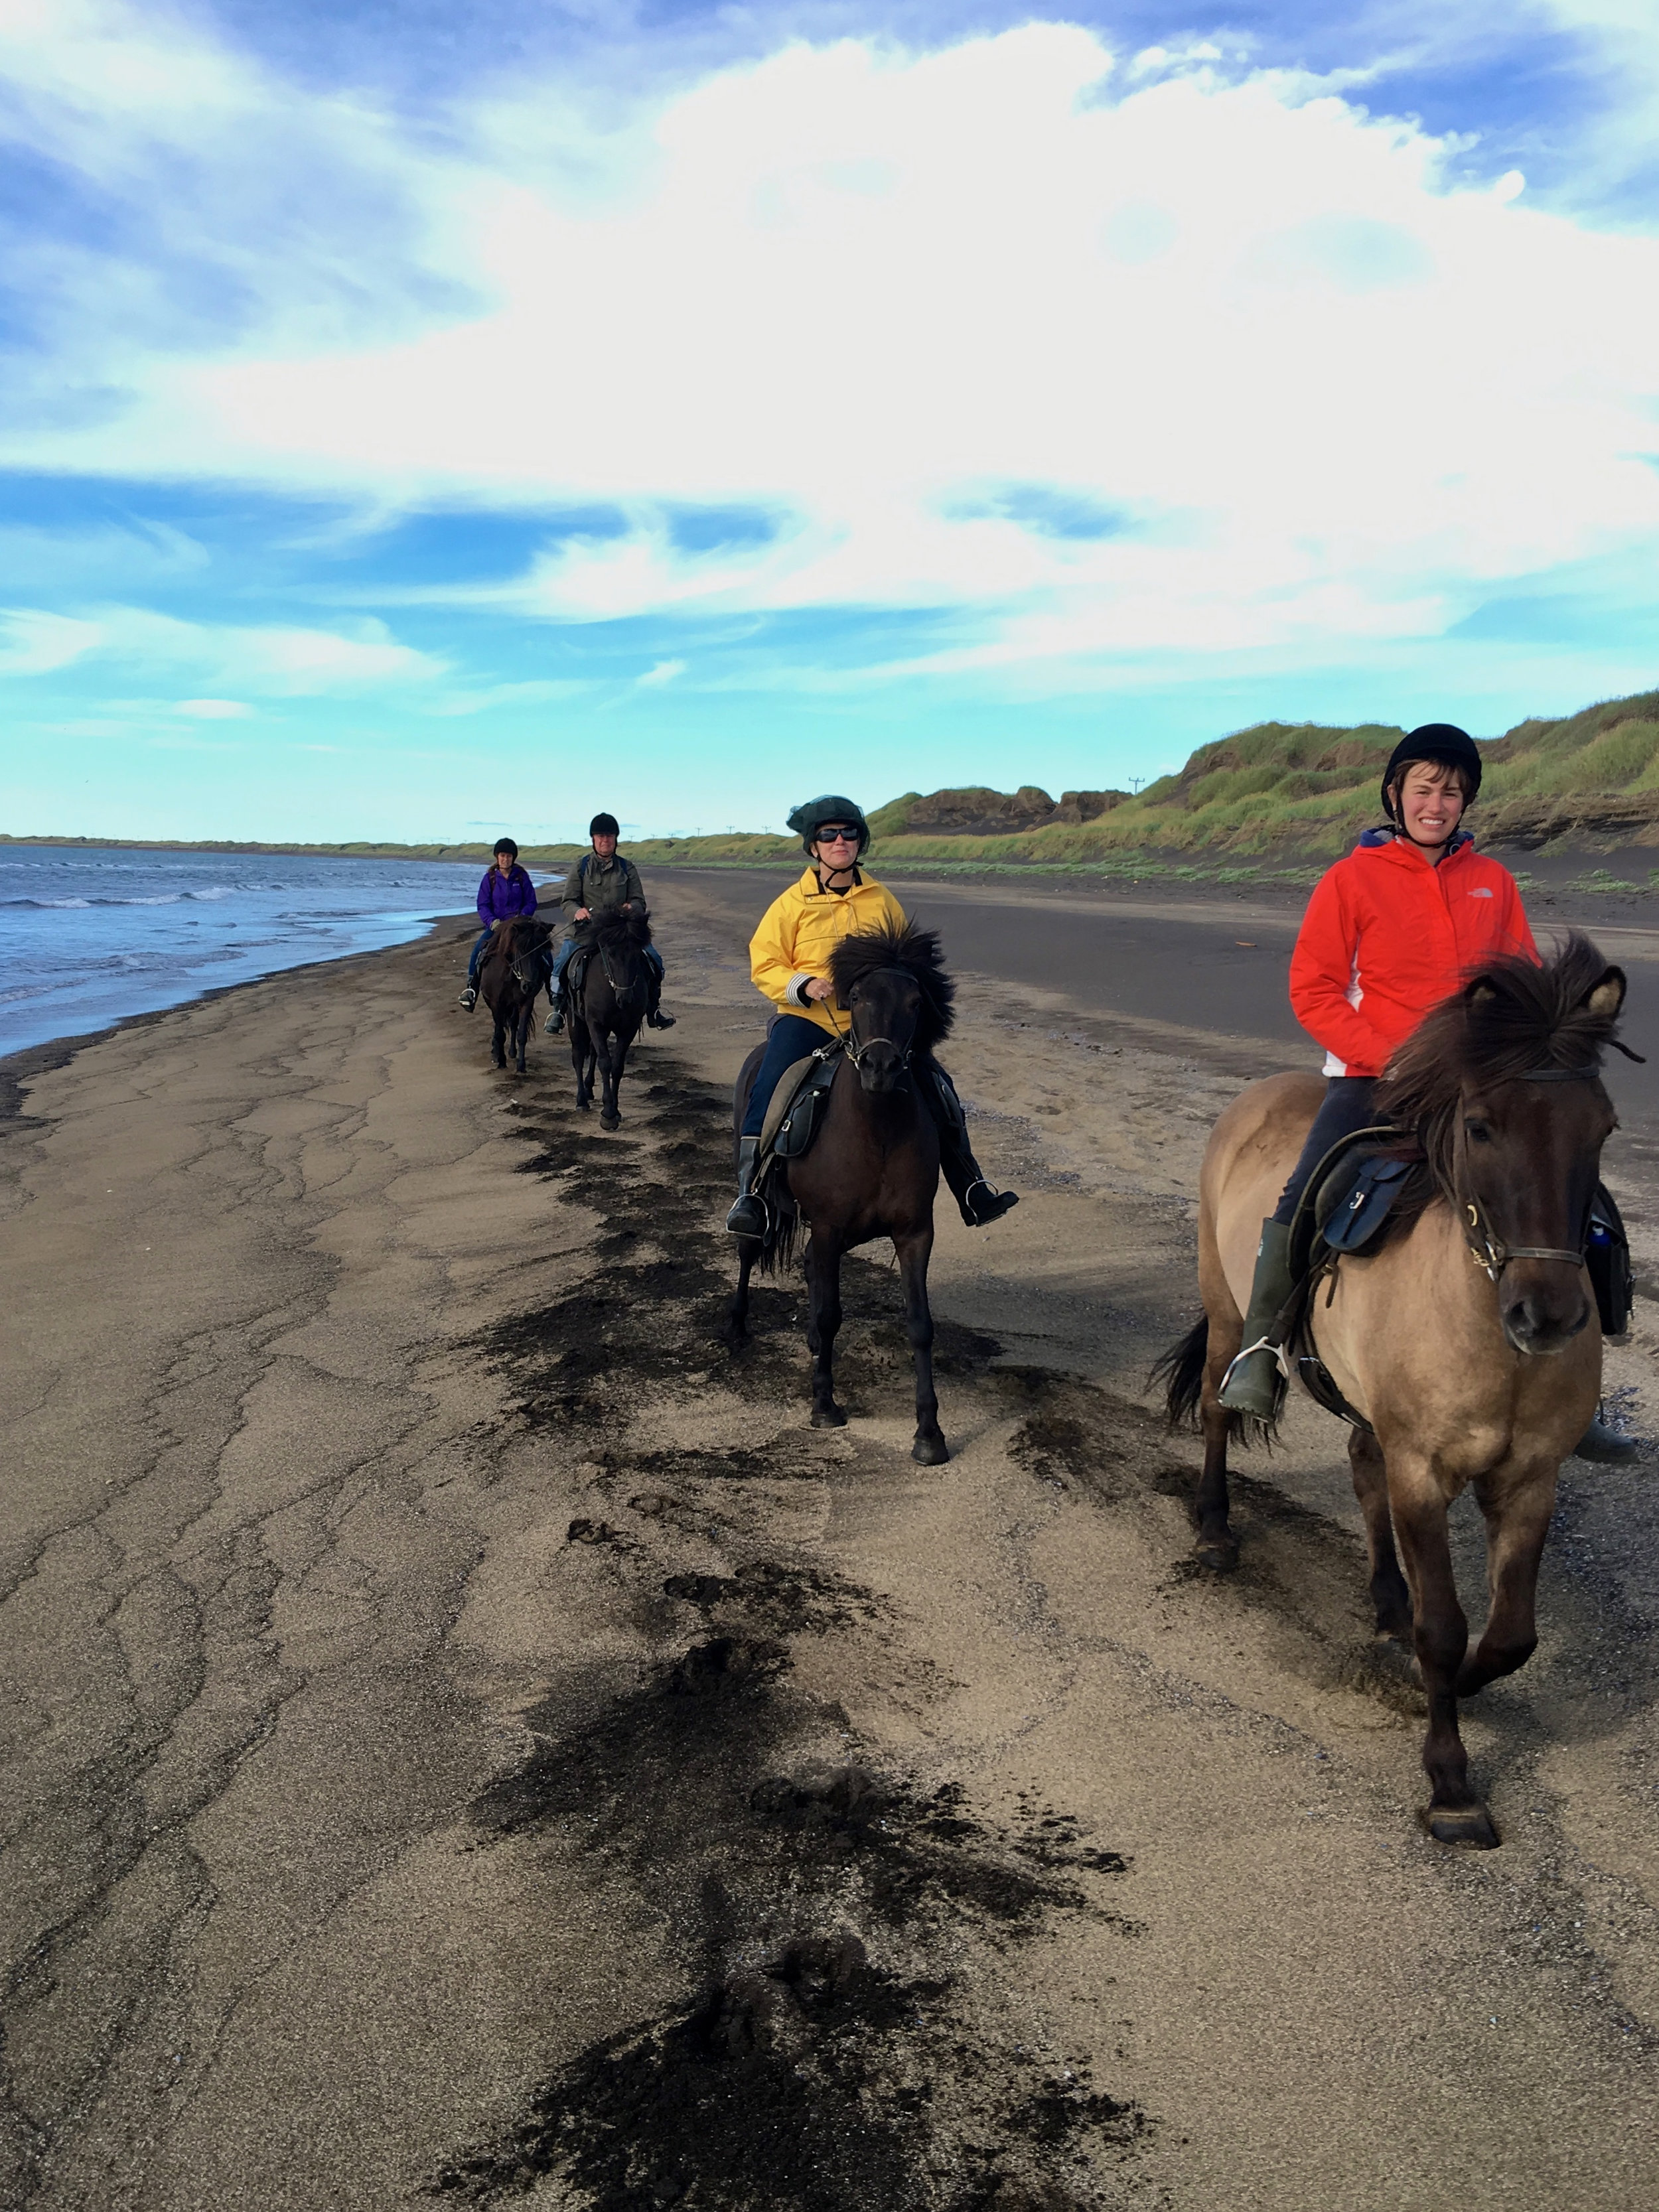 teri_horsebackriding+_Iceland_spiritedtable_photo5.jpg